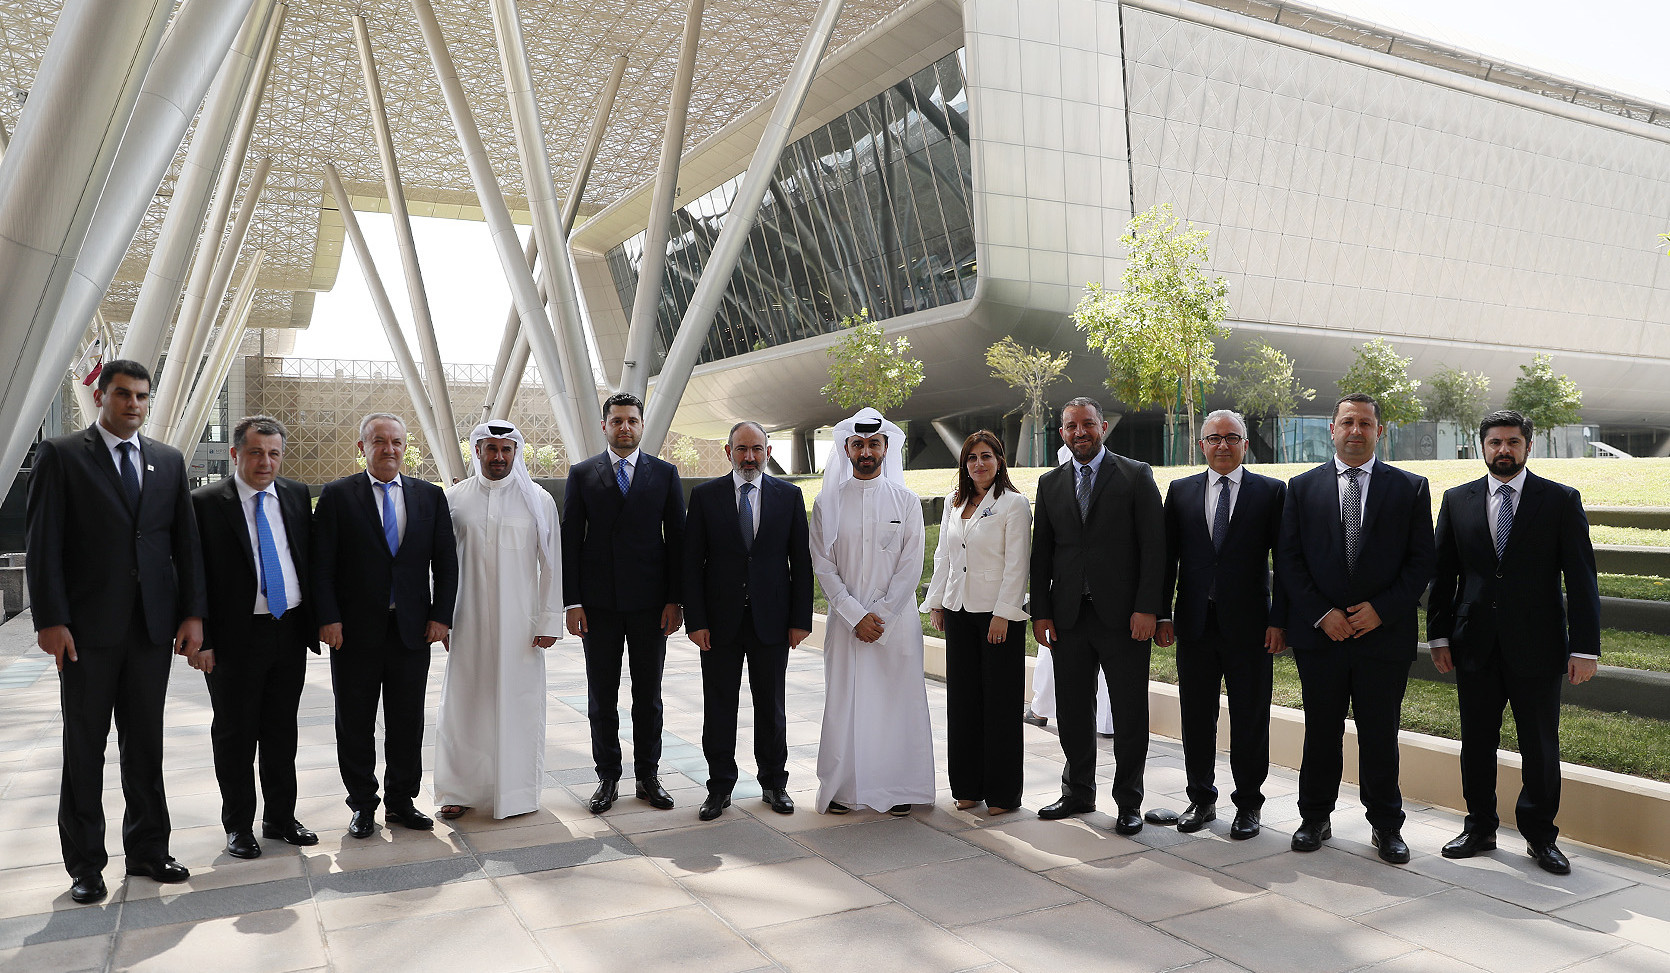 ՀՀ վարչապետն այցելել է Qatar Foundation հիմնադրամ և Կատարի գիտության ու տեխնոլոգիաների կենտրոն